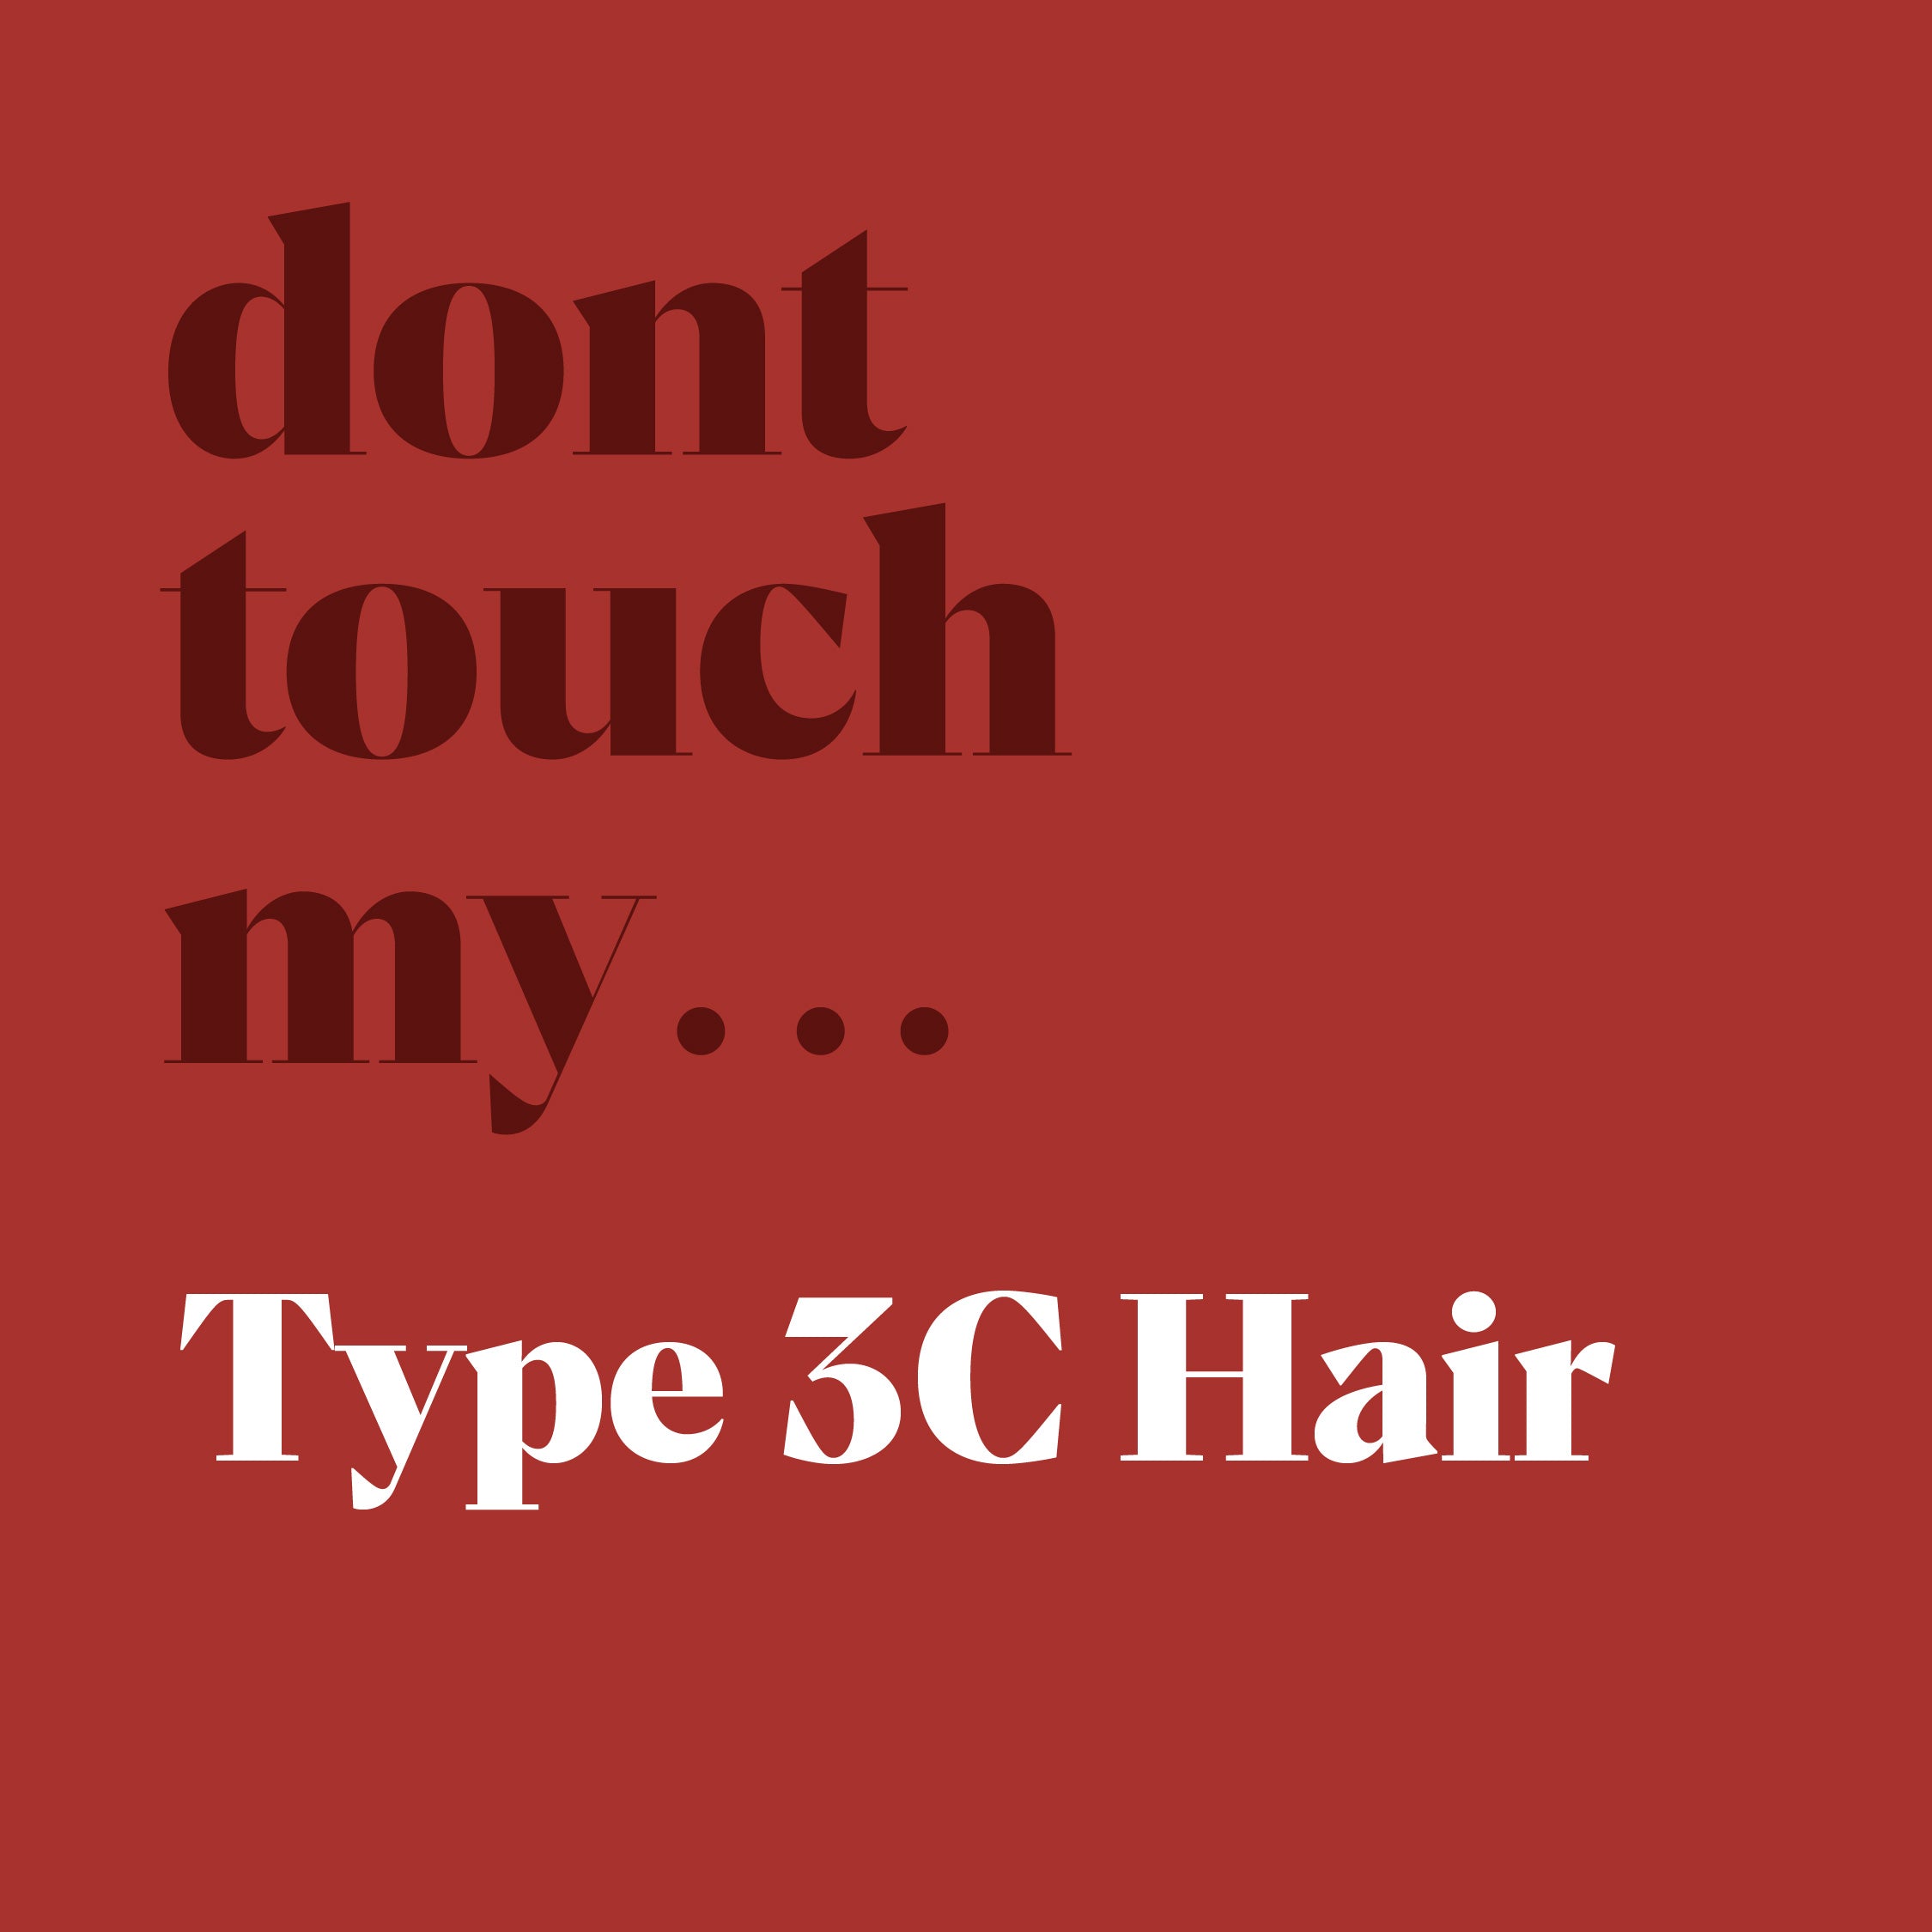 Type 3C hair kit bundle